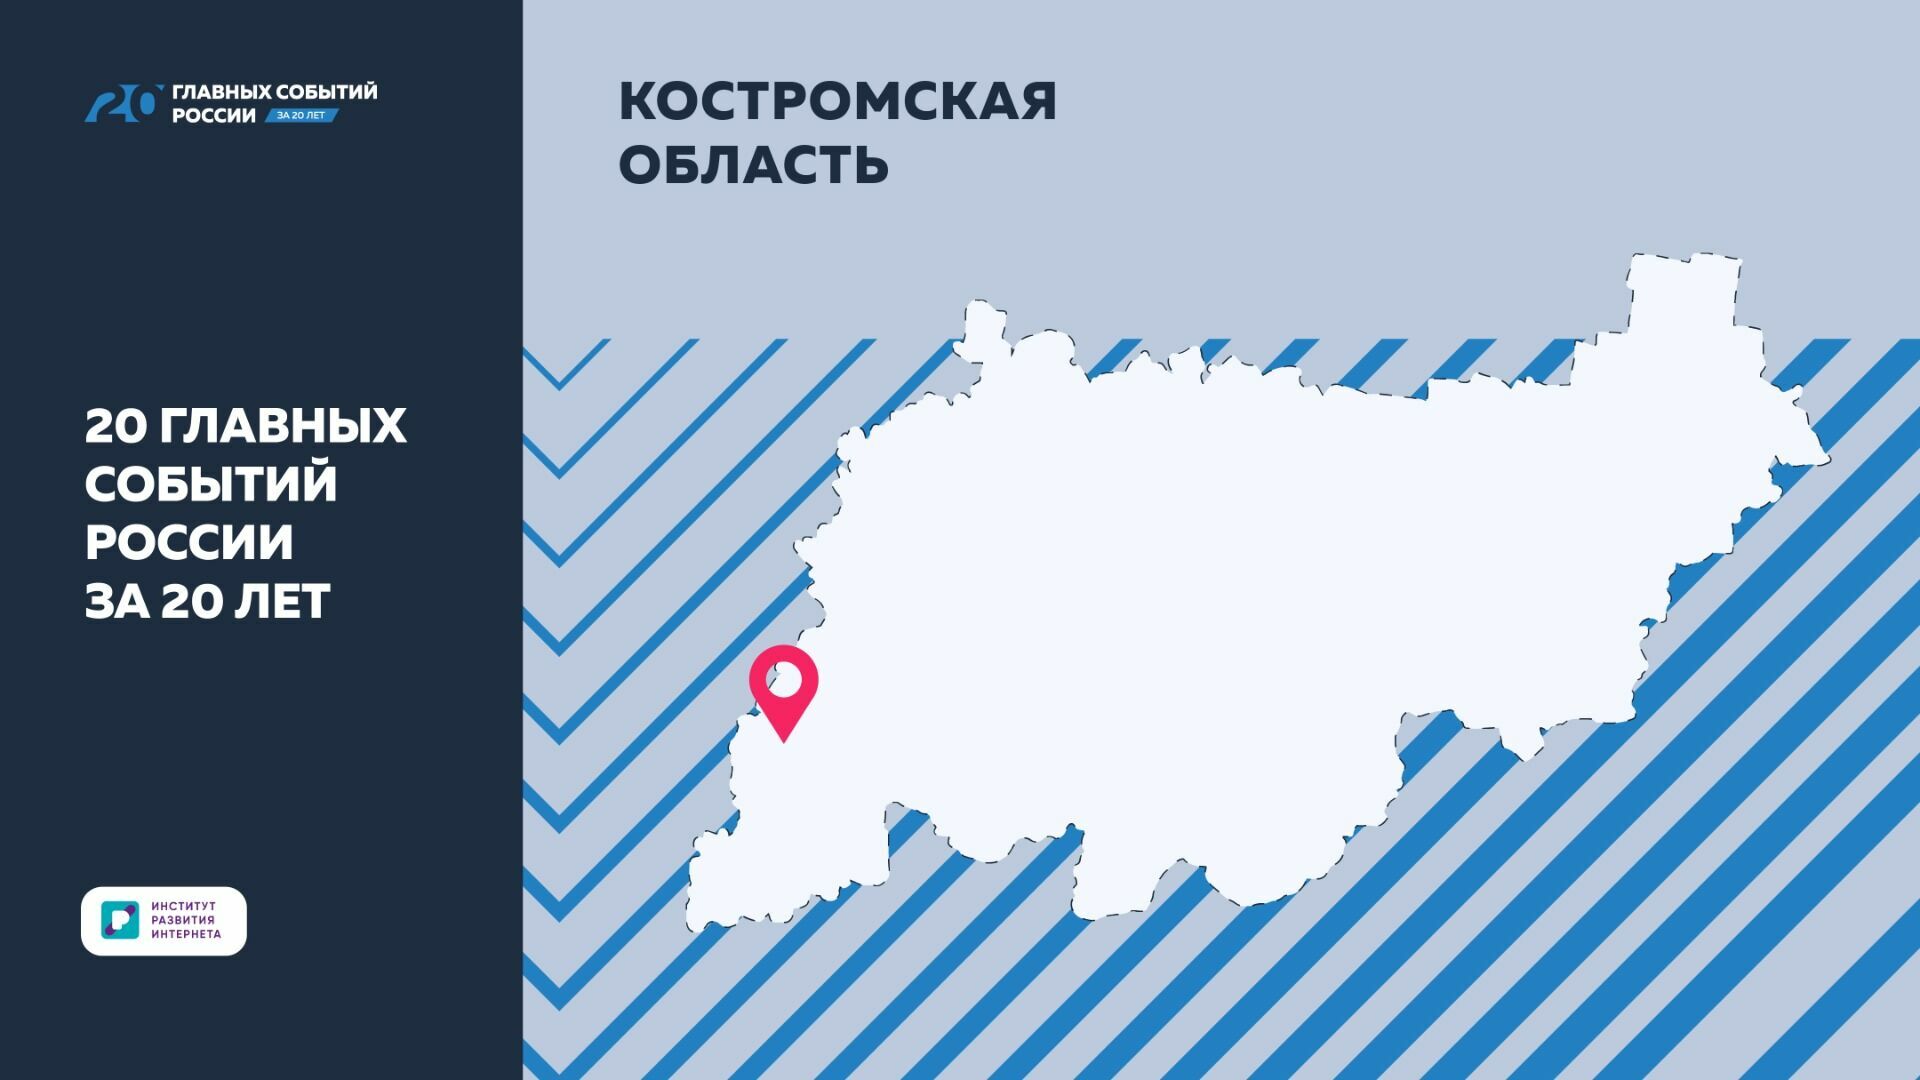 Костромская область: В ИРИ назвали основные события региона за 20 лет